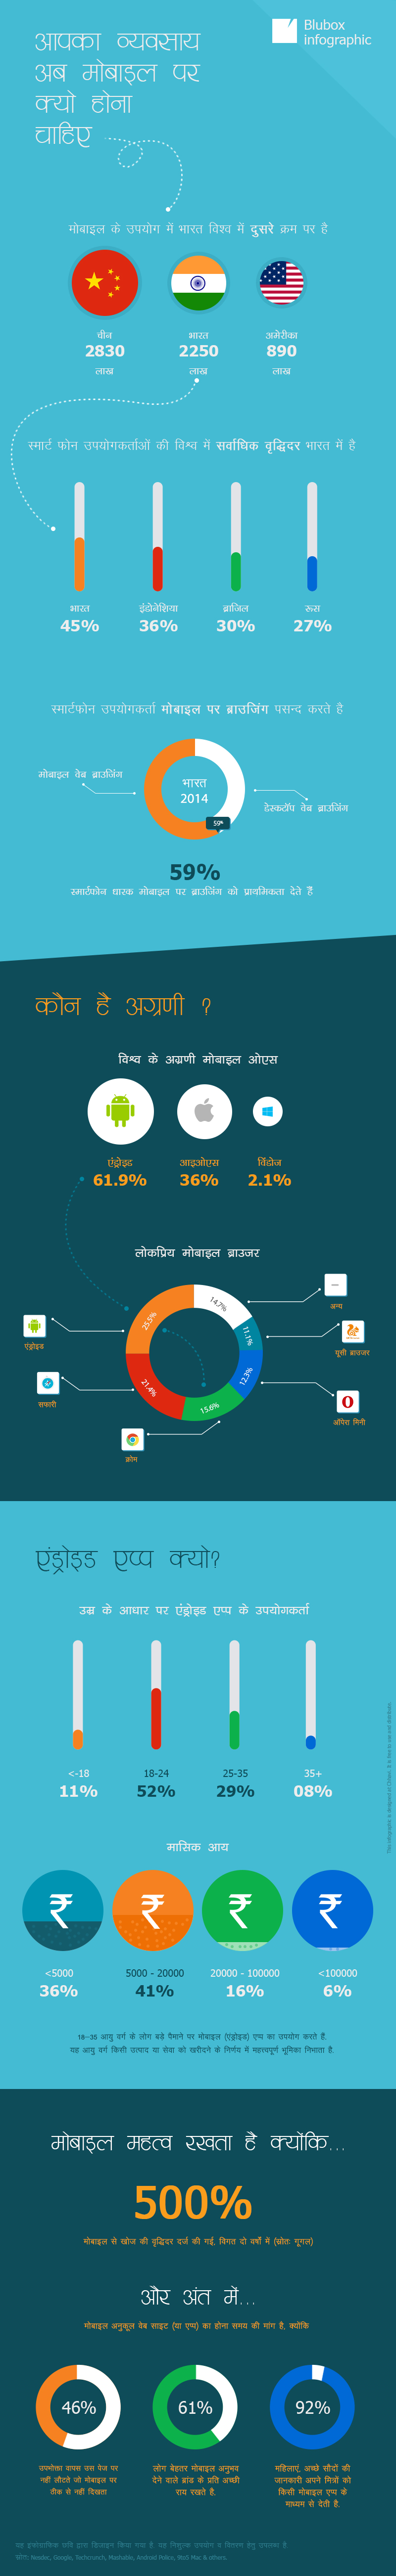 mobile-use_hindi